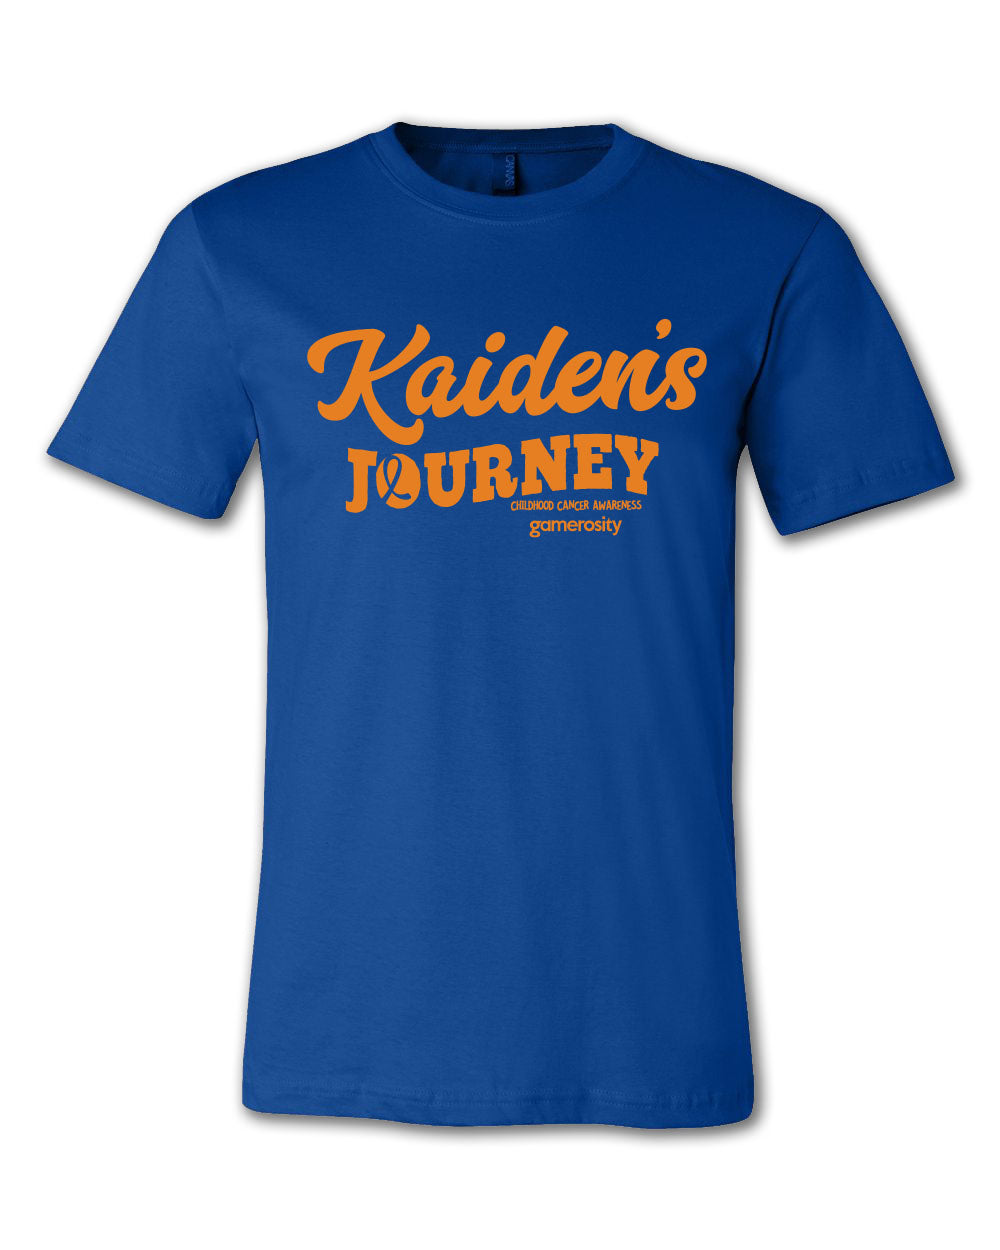 Kaiden's Journey